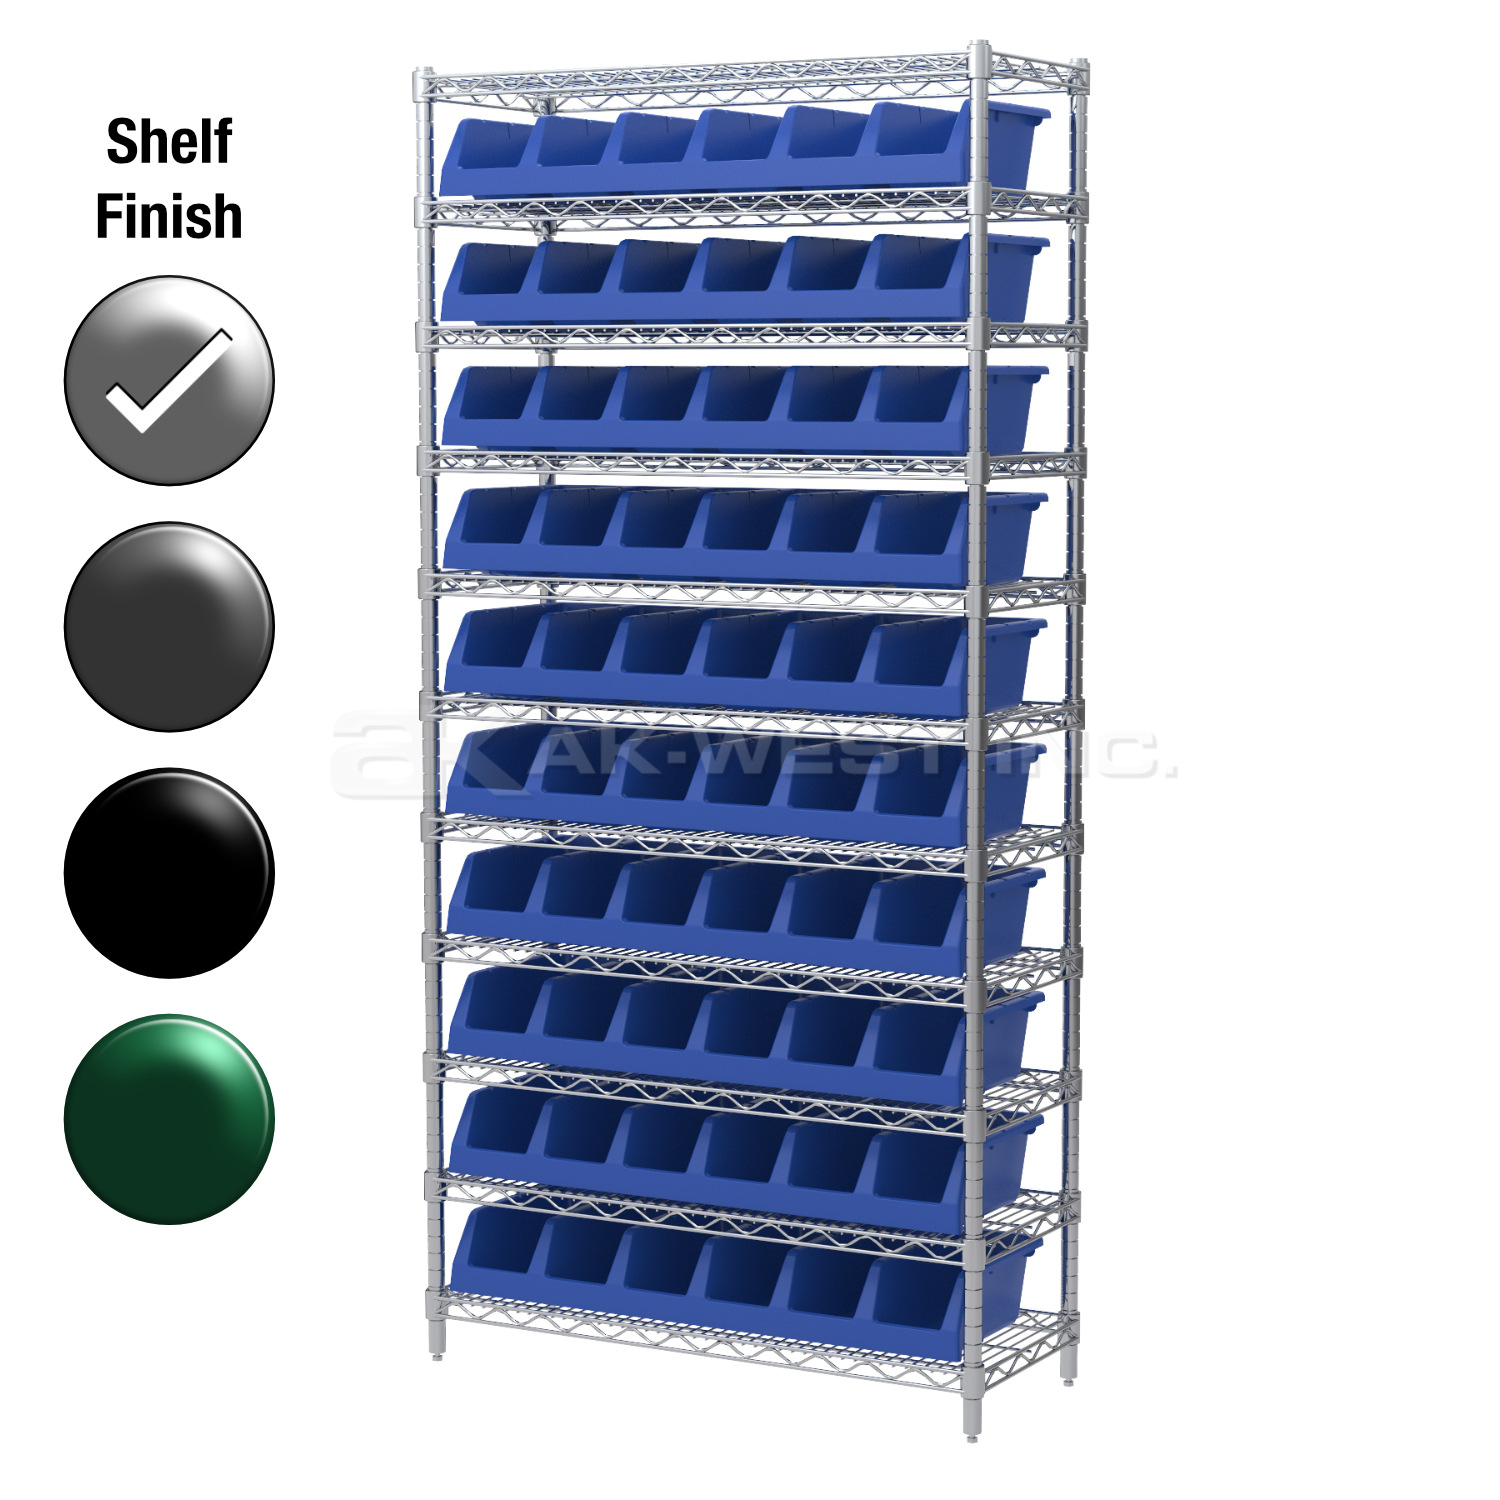 12"D x 36"W x 74"H Chrome Shelf w/ (11) Shelves and (10) 30312s